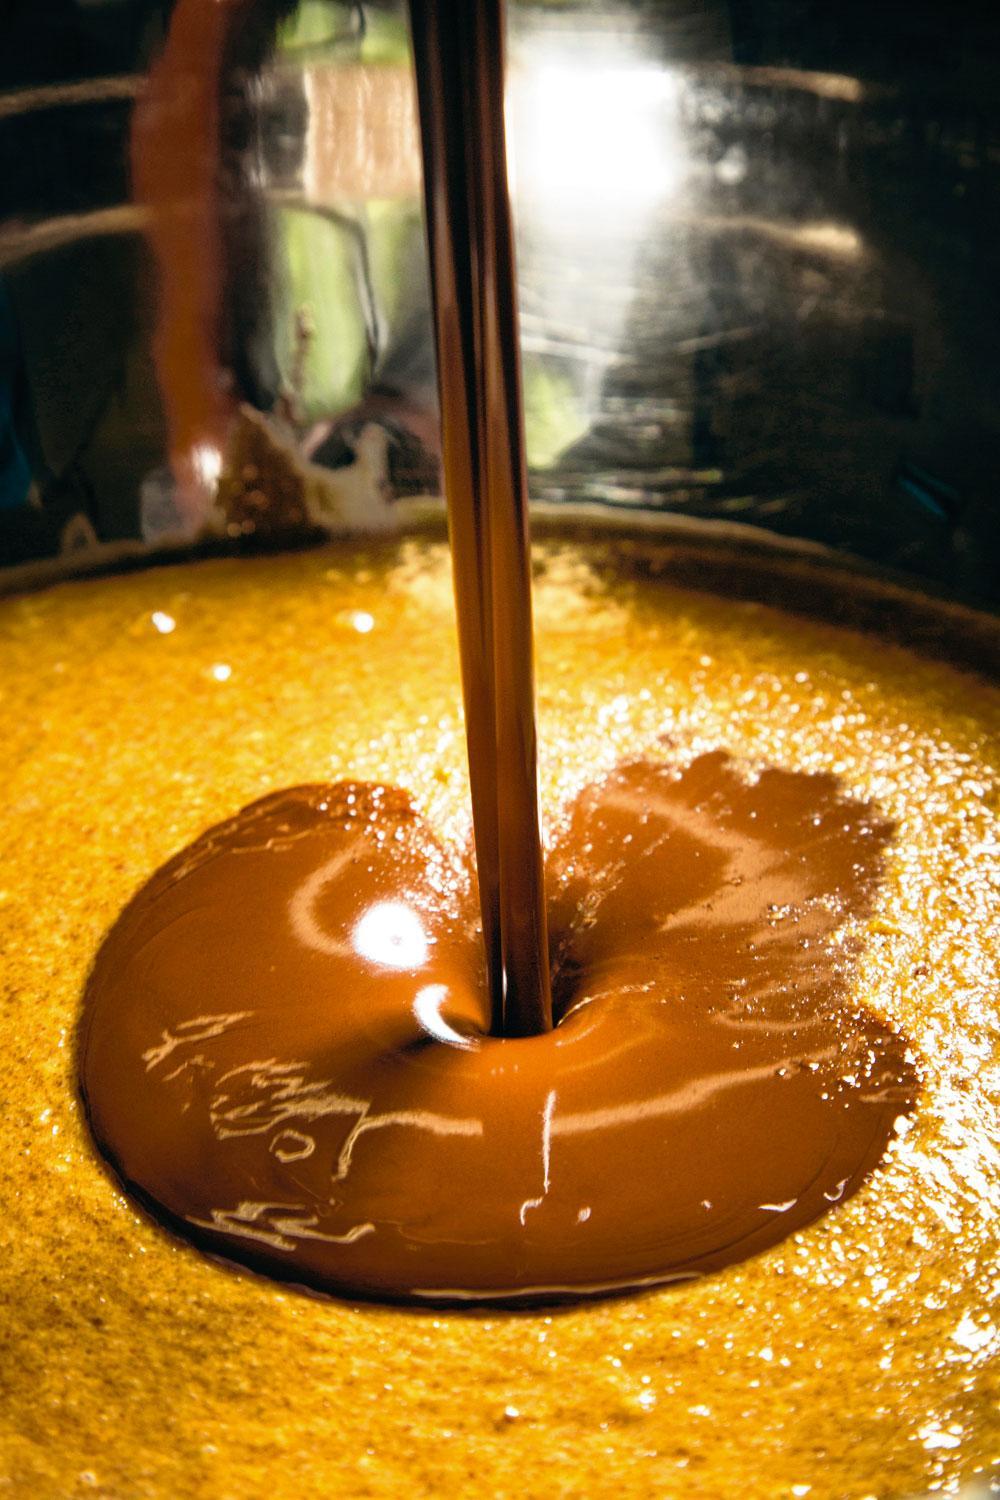 Mengen - Vervolgens wordt de vulling gemengd met de chocolade en tot 22 graden Celsius opgewarmd. Die temperatuur is ideaal om de beide ingrediënten grondig met elkaar te vermengen. De chocolade die in dit recept wordt gebruikt, wordt elders geproduceerd. 